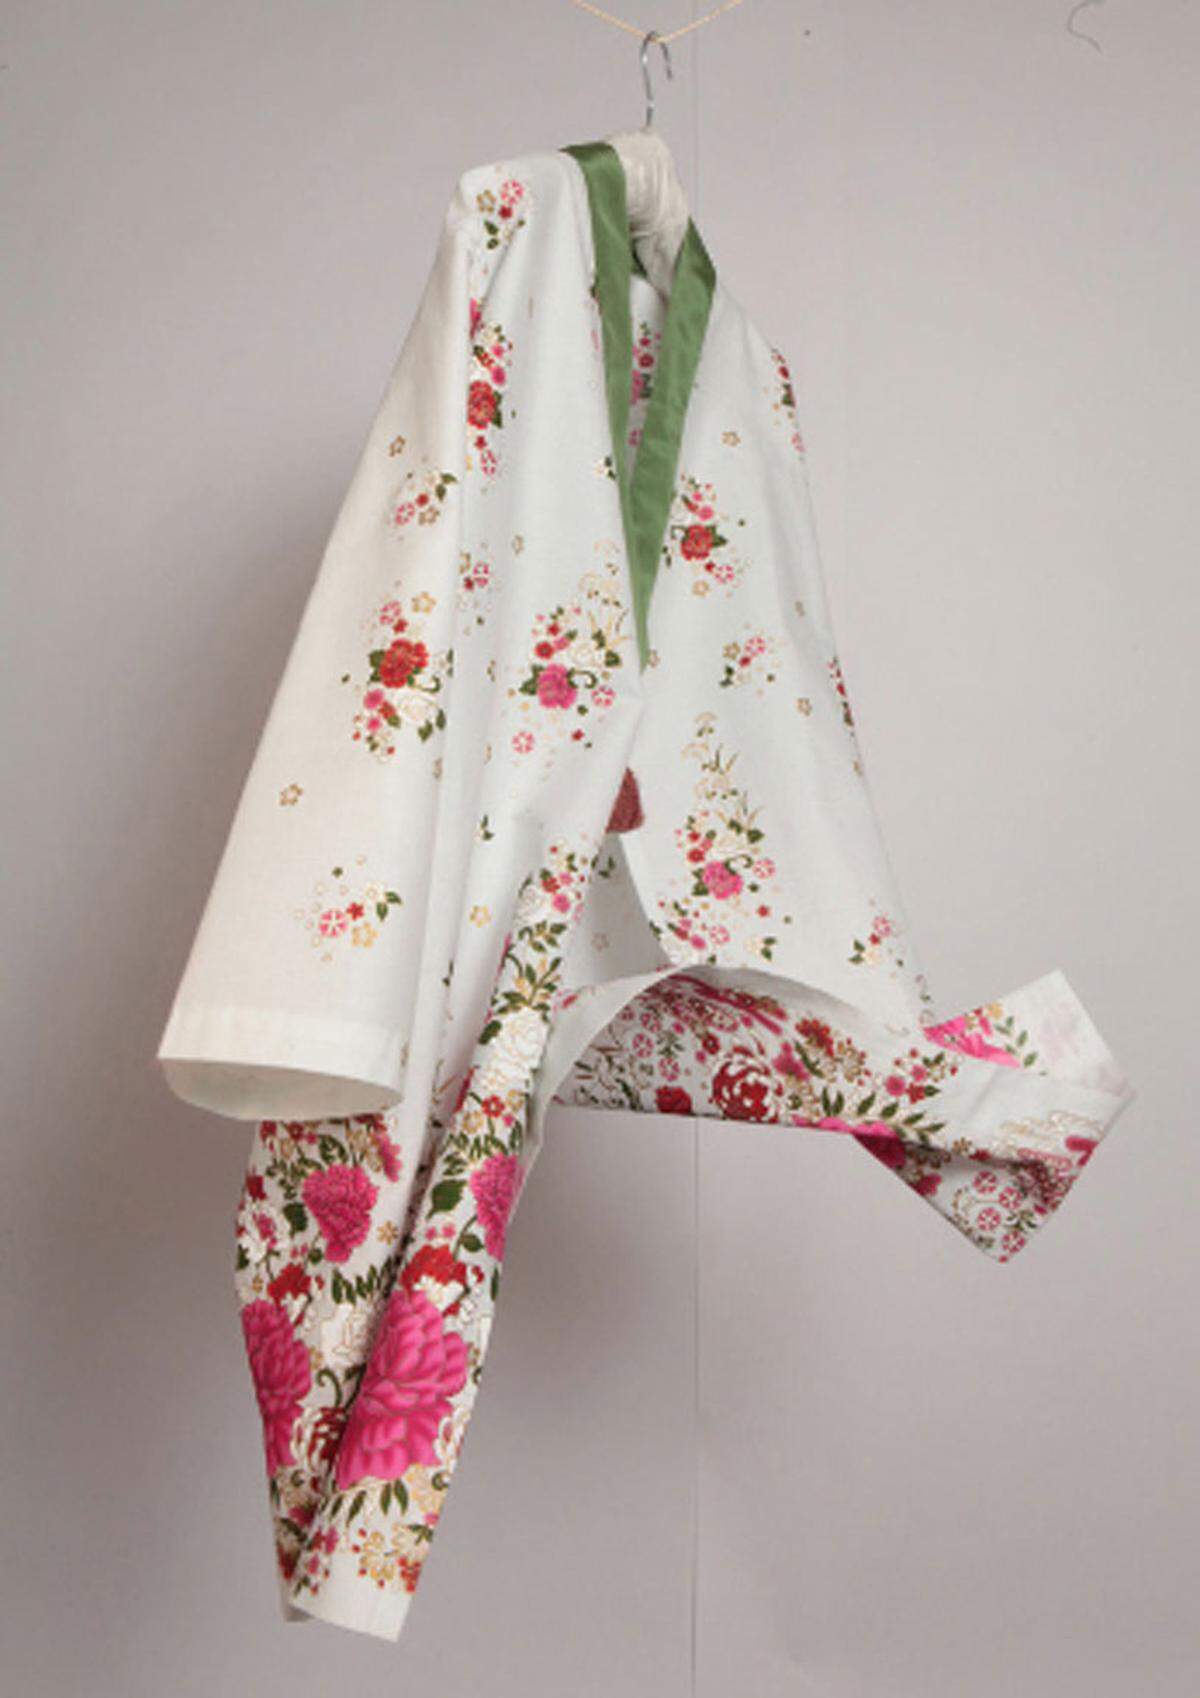 In Anlehnung an die japanische Kimonotradition haben Klaus Rink und Nina Wiplinger Yukatas (Kimonos für zu Hause) entworfen. Diese sind im Wiener Shop Salonfähig (salonfähig.at) zu kaufen.